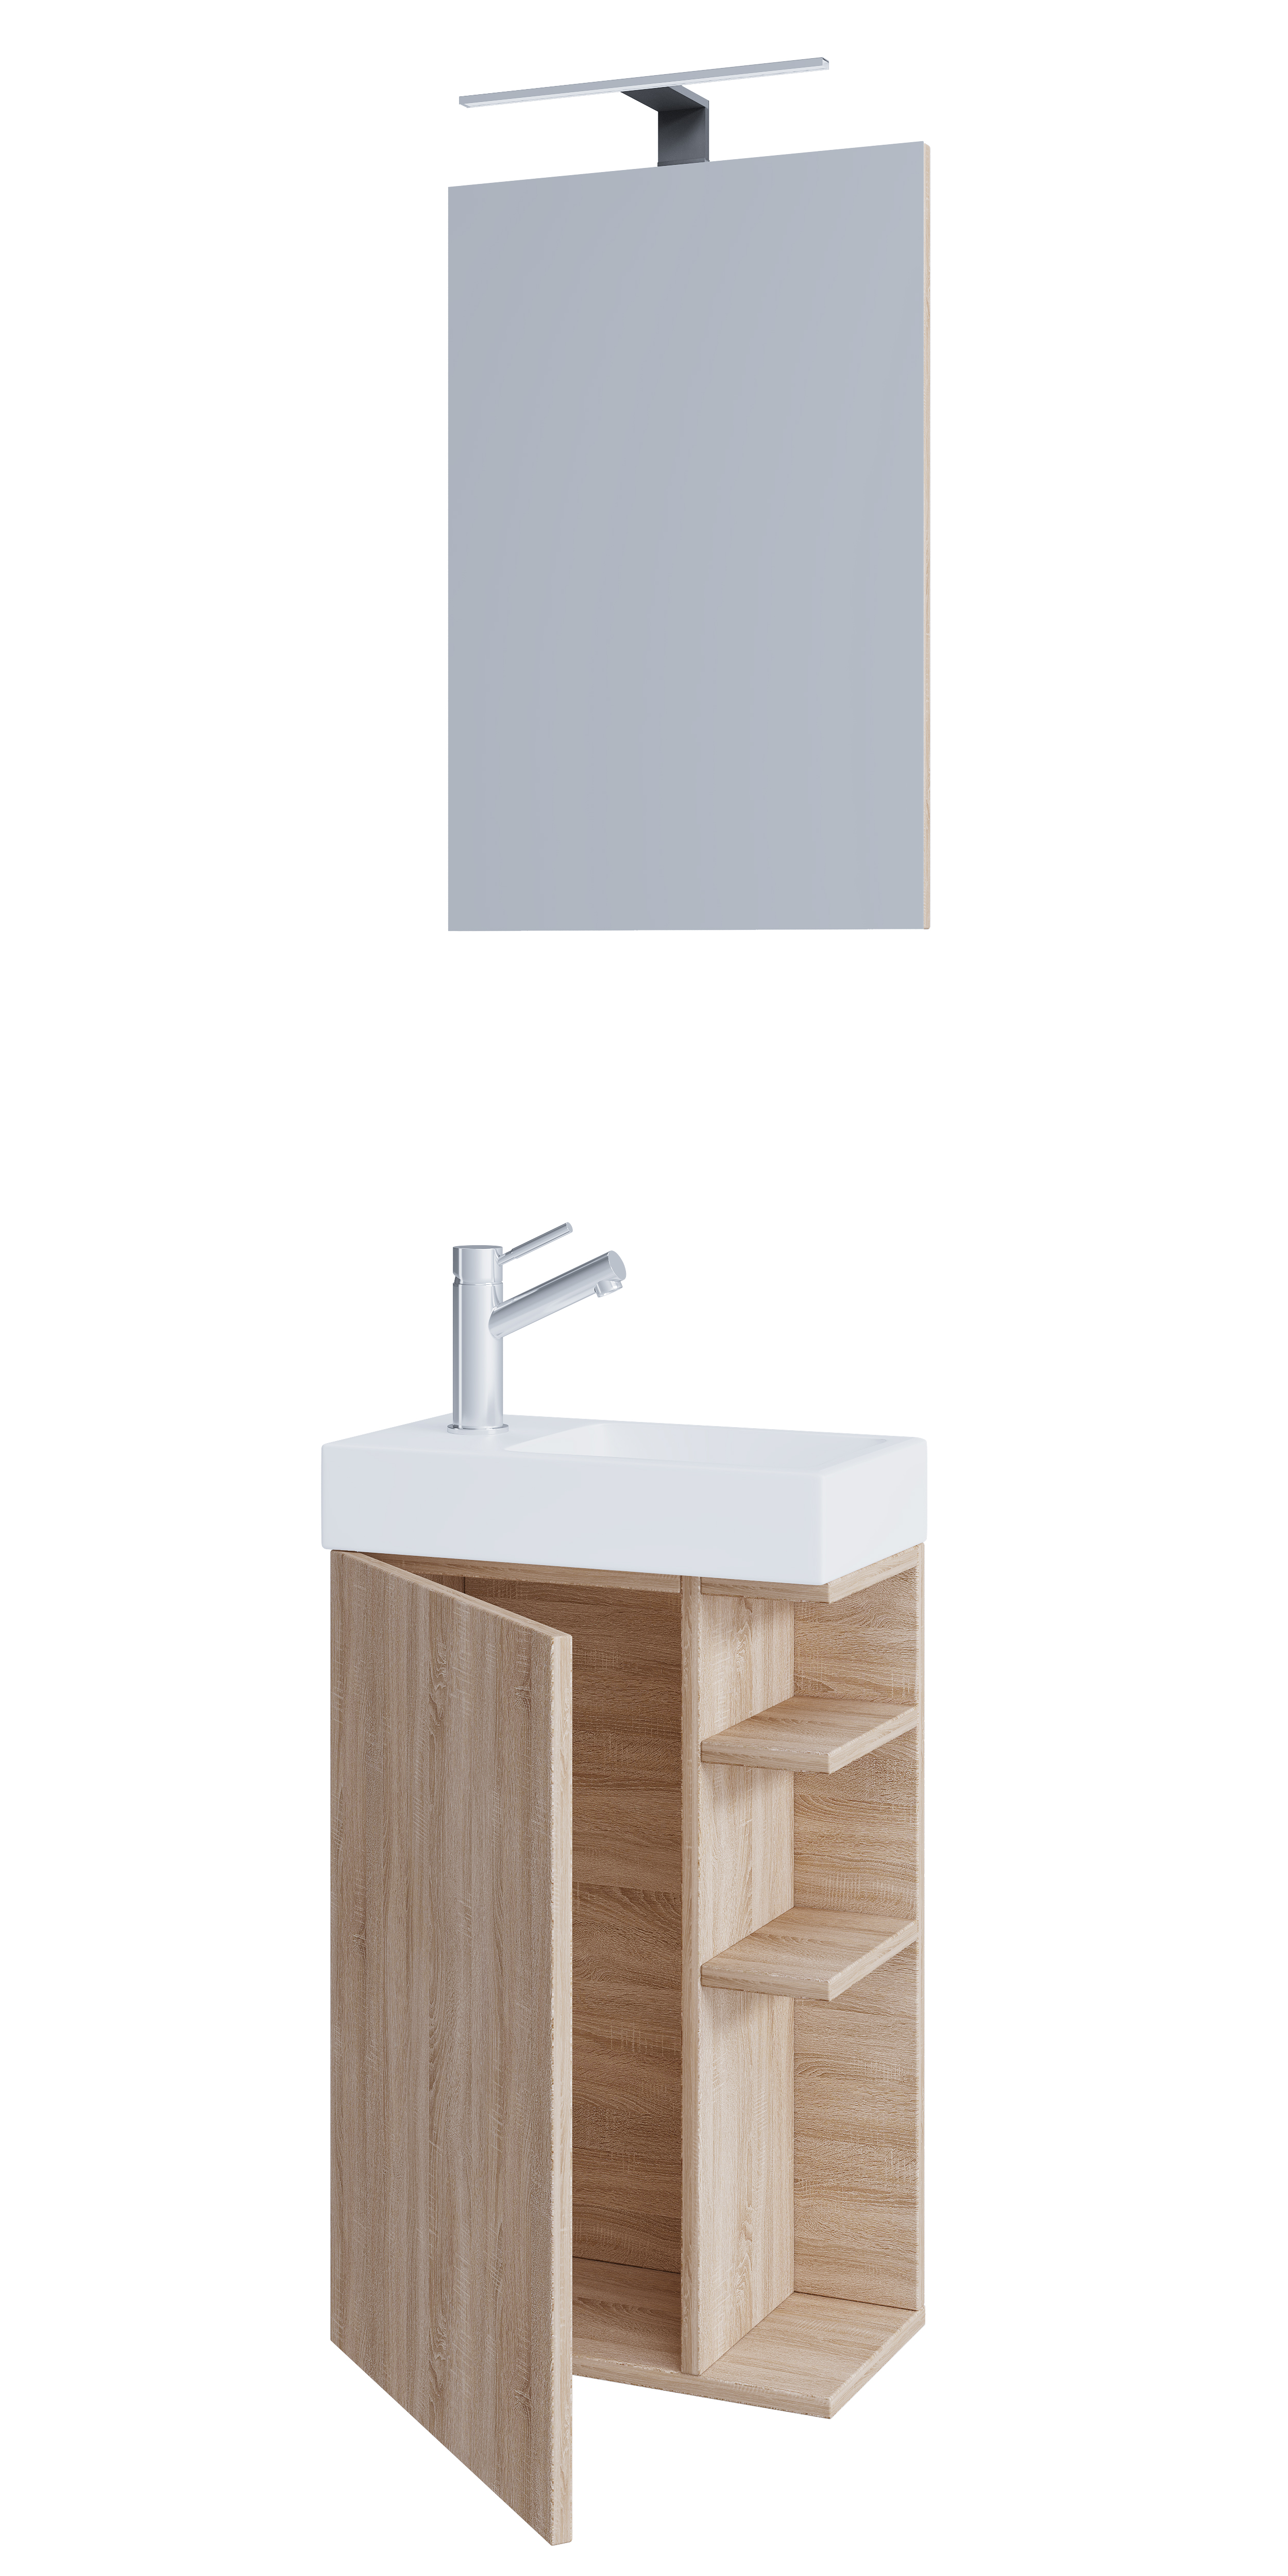 Billede af VCM NORDIC Lumia 3-delt gæstevaskeplads, m. spejl, håndvask, 1 låge, 2 hylder - keramik og natur træ